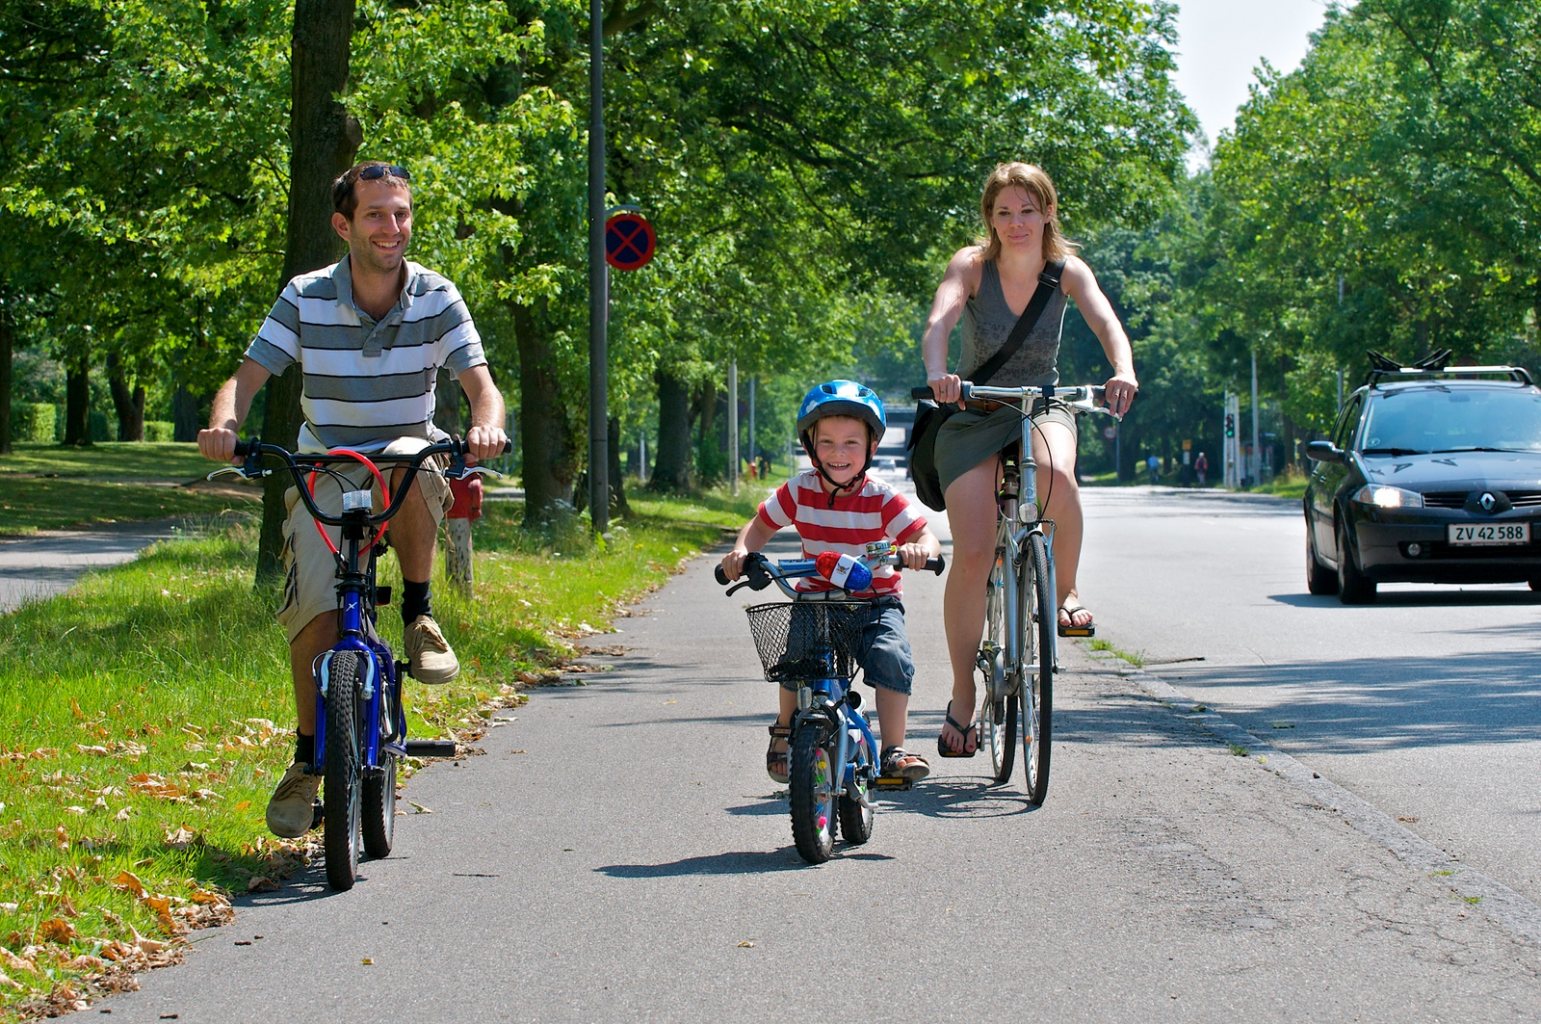 Велосипедисты на тротуаре. Велосипедист на дороге. Дети с велосипедом. На велосипеде по тротуару. Езда на велосипеде дети.